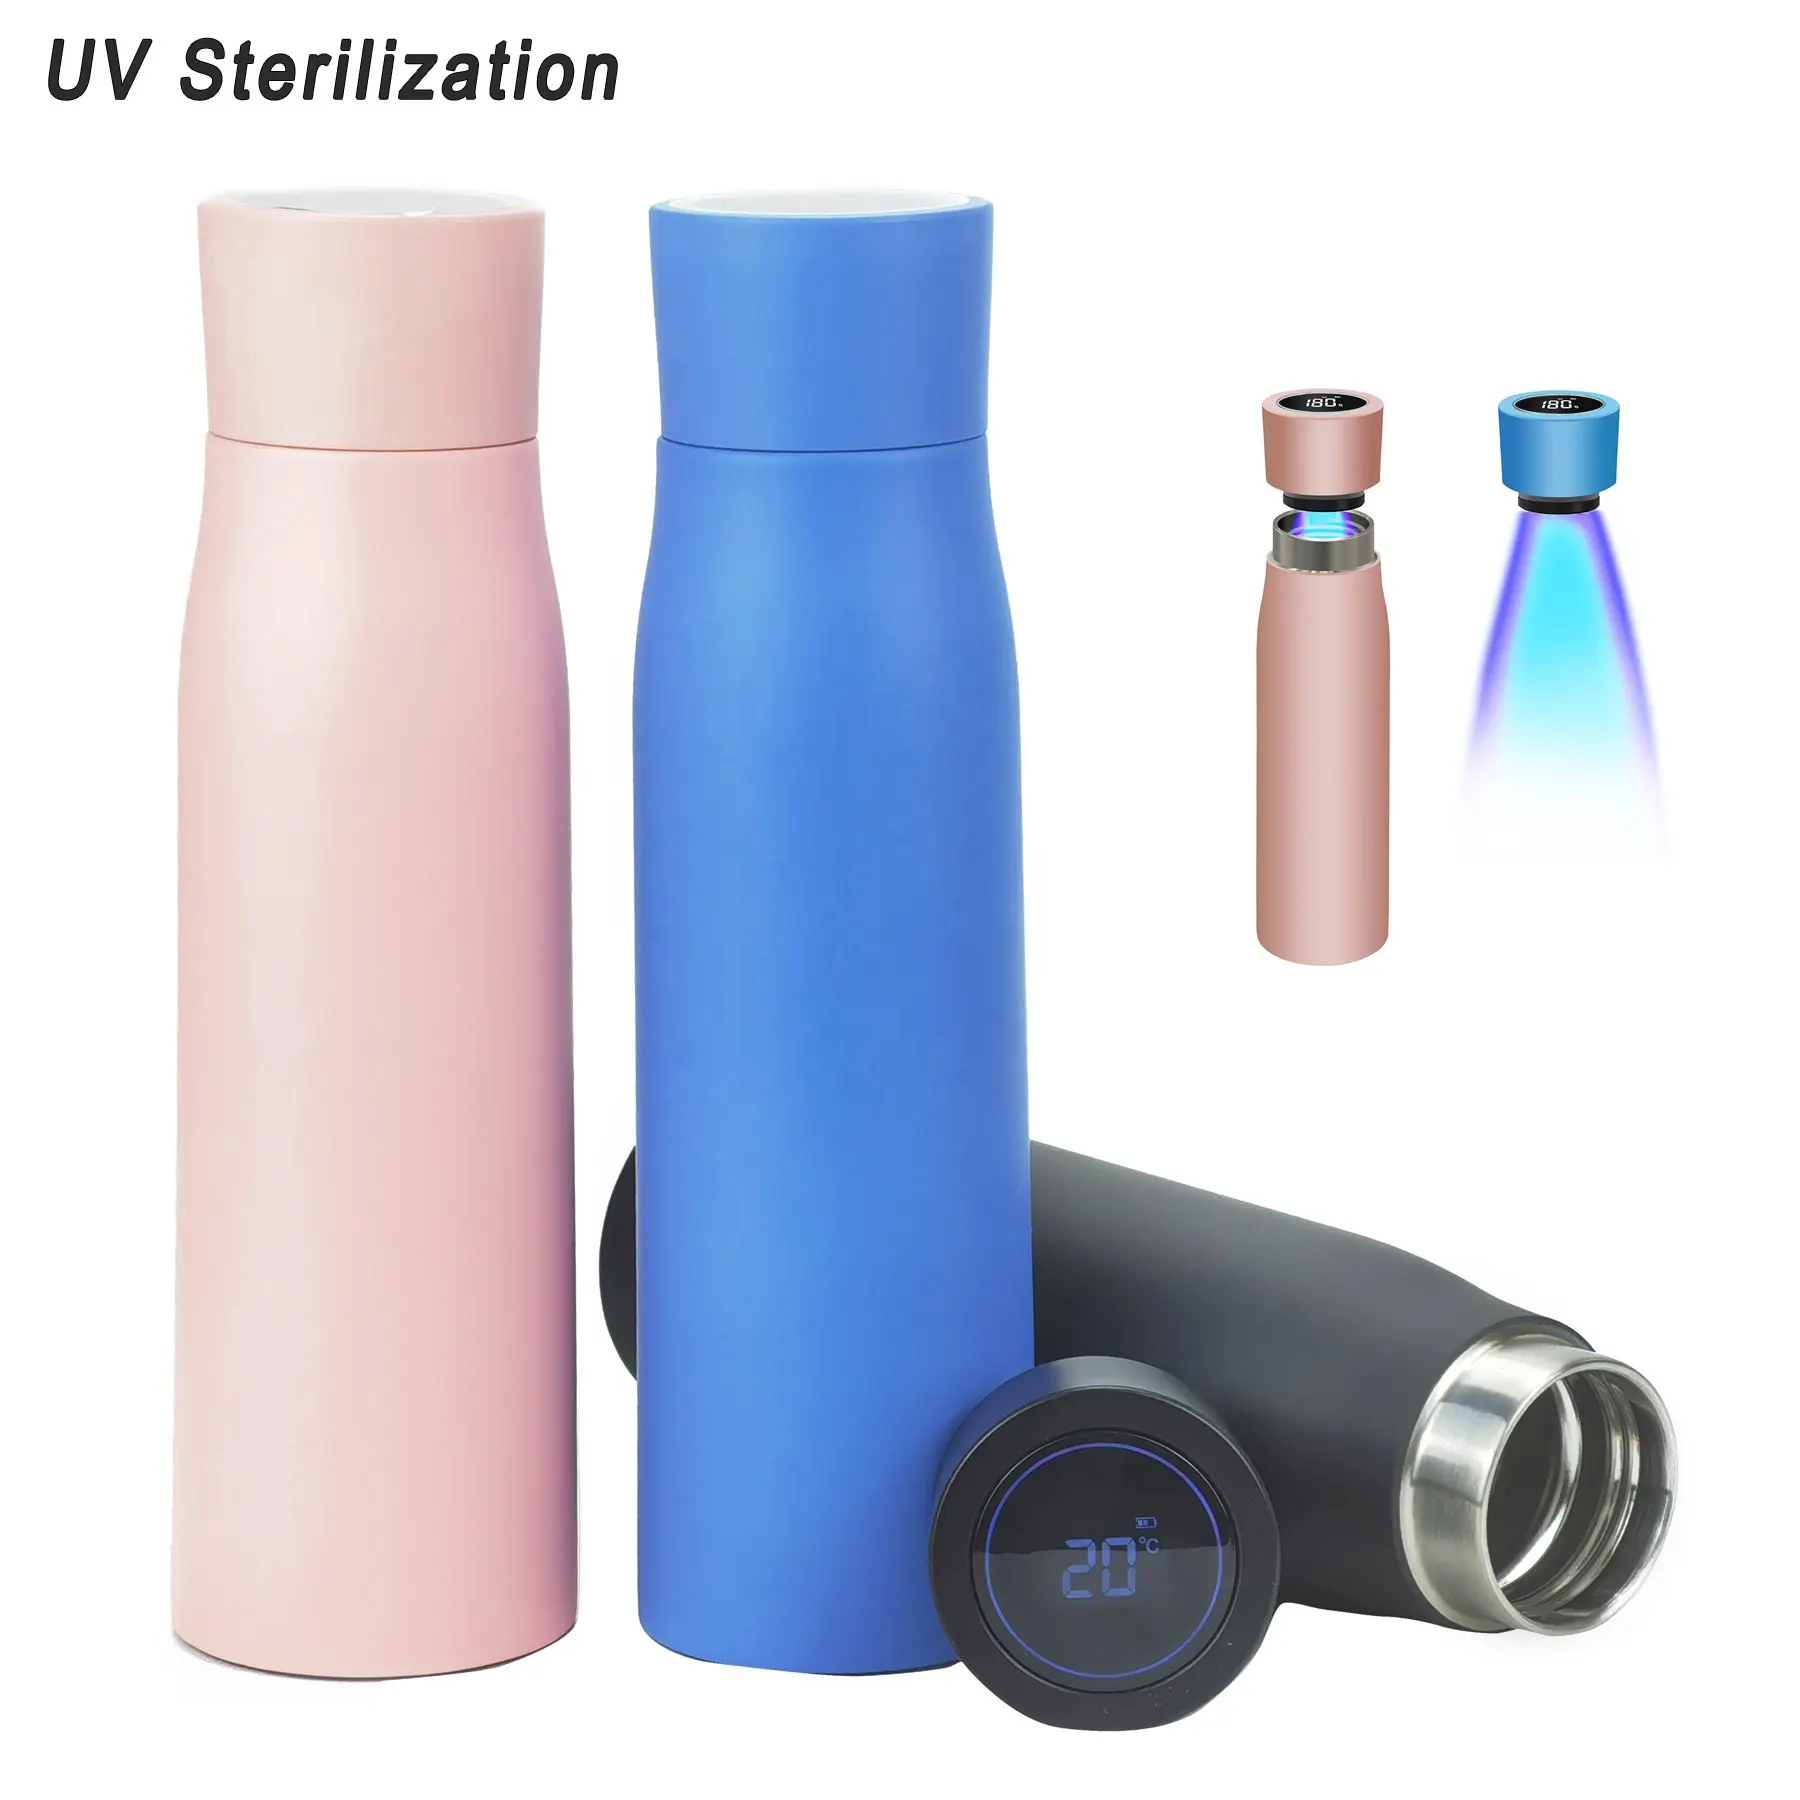 Tragbare UV-Wasser flasche Smart Wasser flaschen mit UV